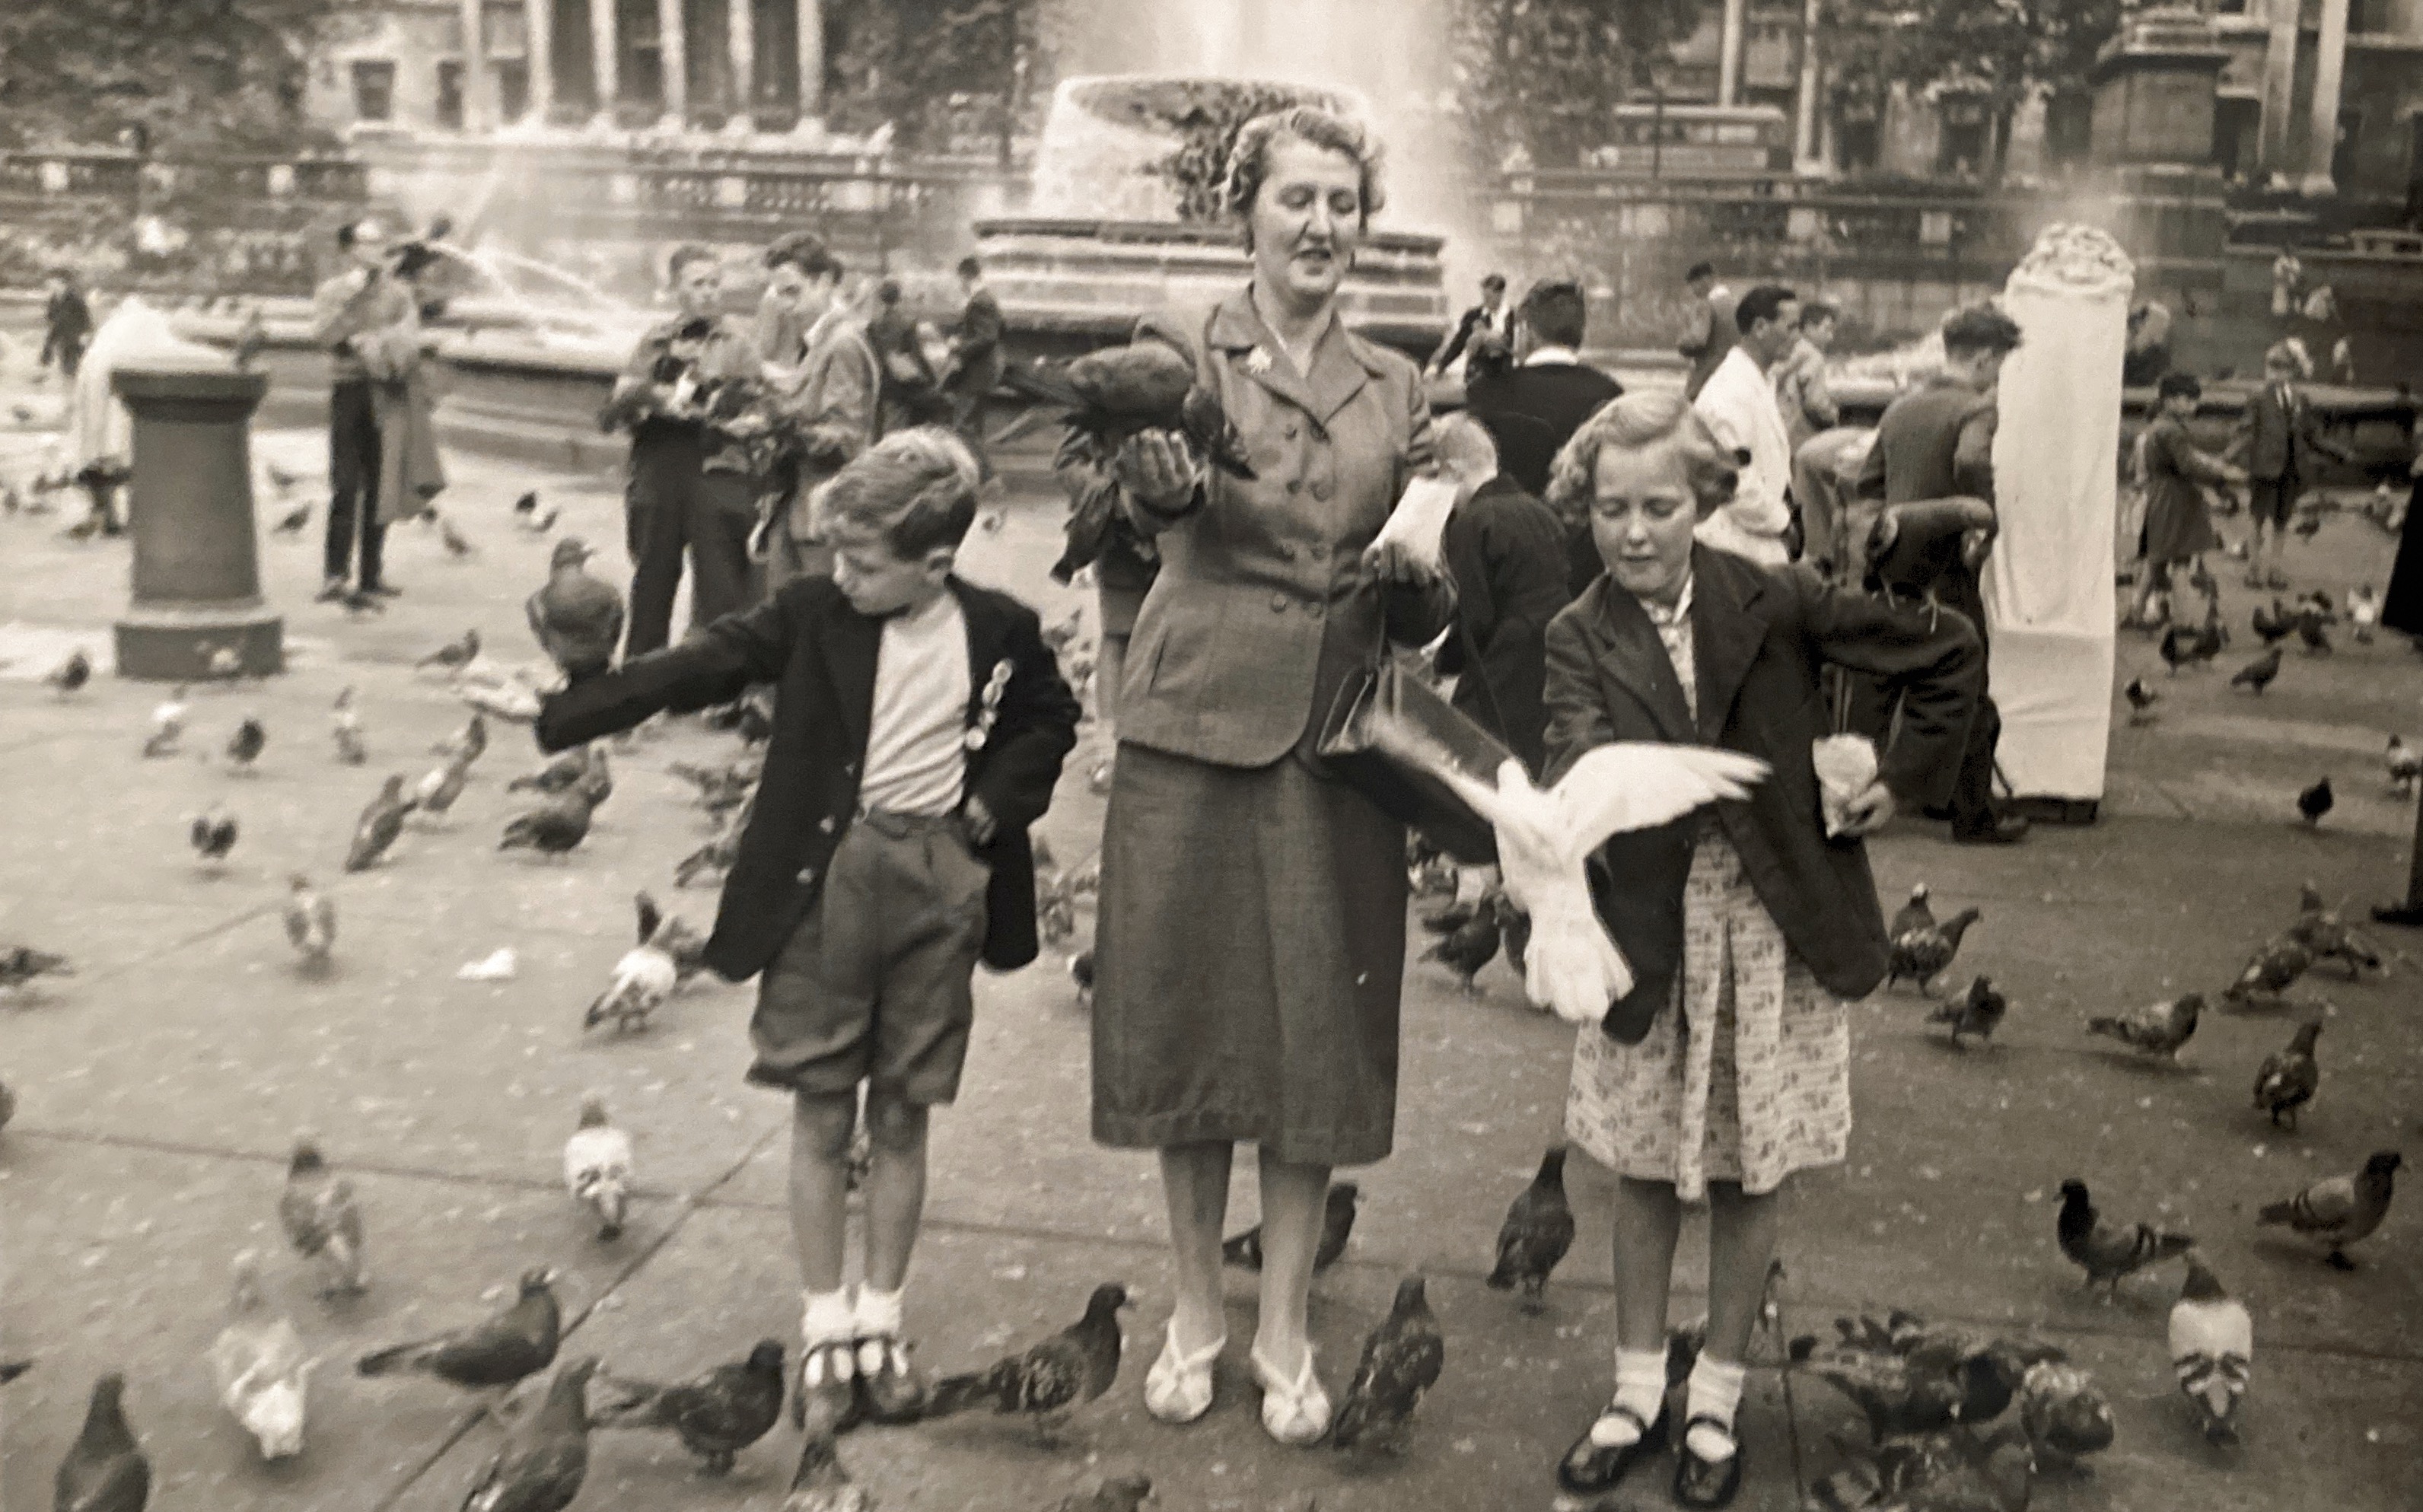 Trafalgar Square circa 1955